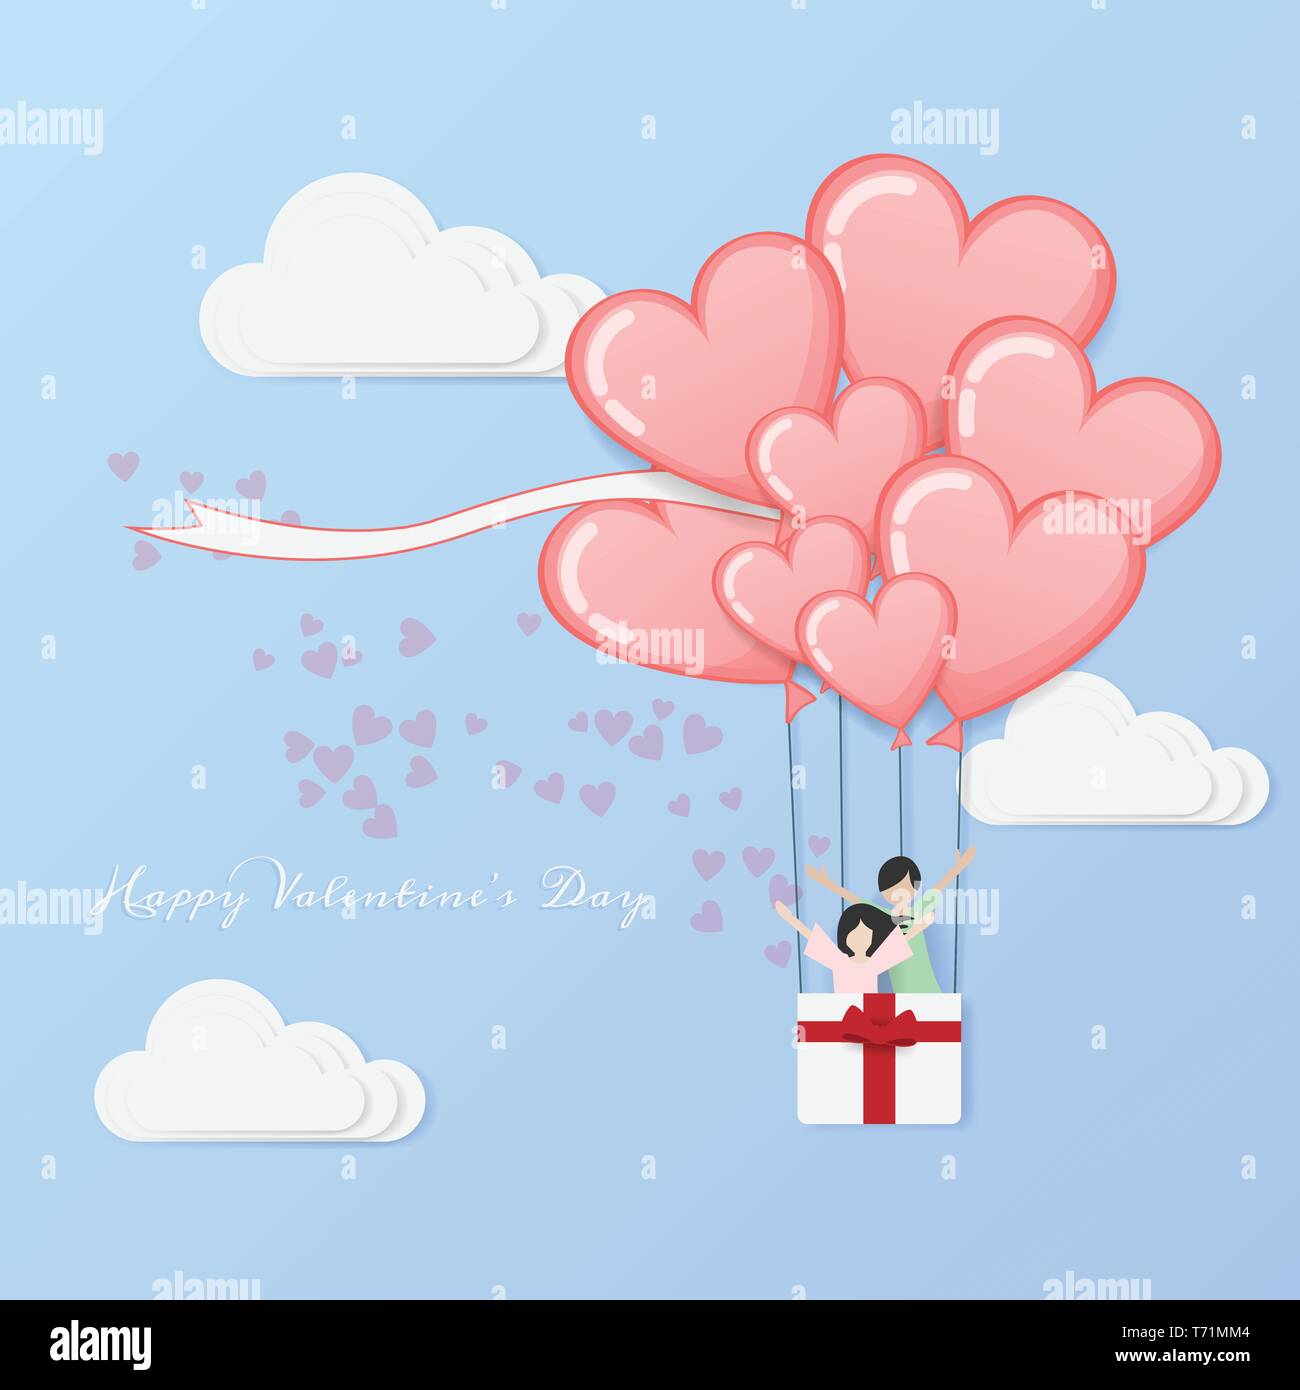 Vecteur de l'amour et Bonne Saint-Valentin. hot air balloon flying avec amour couple intérieur panier et coeur flotter à ciel nuageux. Salutation de la Saint-Valentin location Illustration de Vecteur